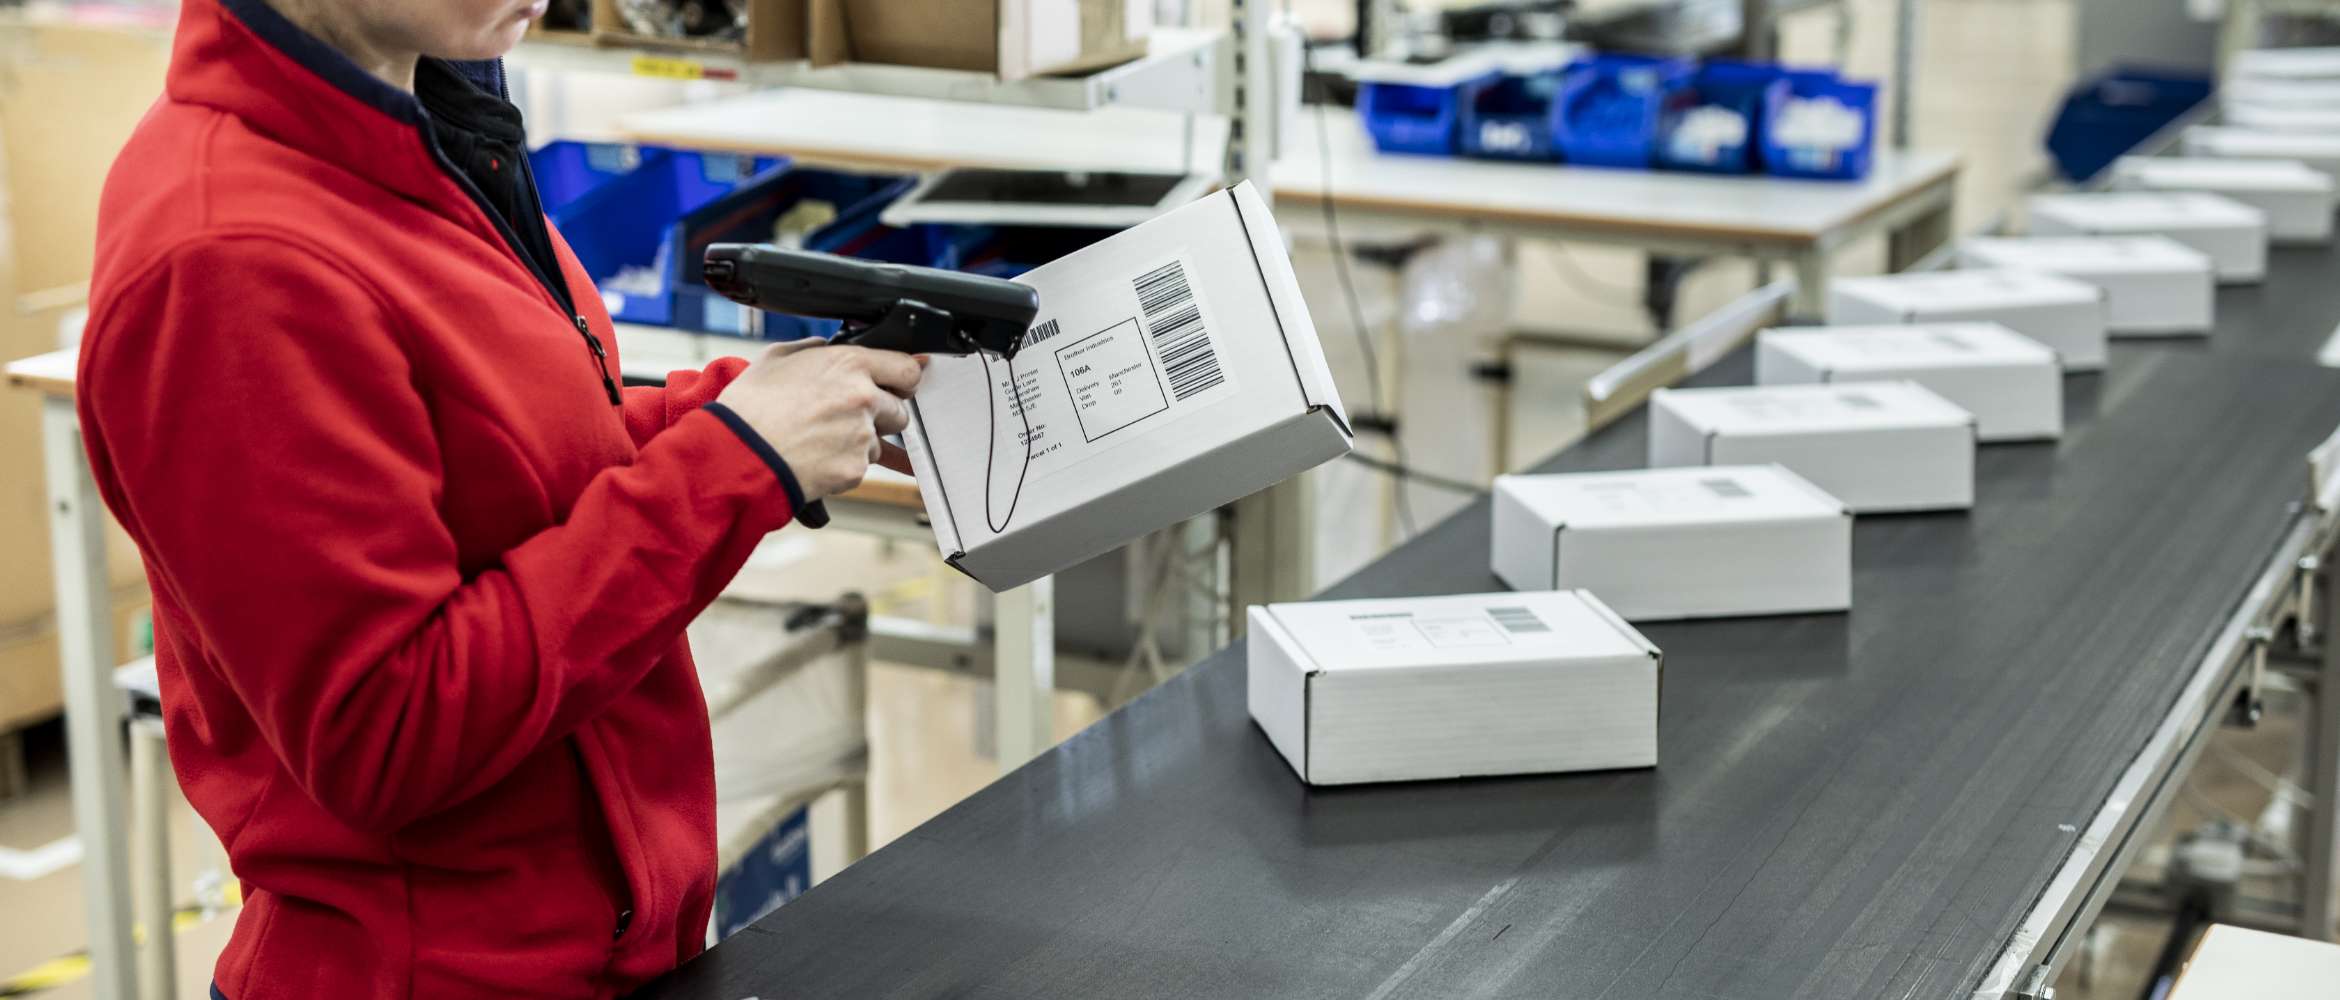 La ligne de production d'un convoyeur d'usine est remplie de colis emballés tandis qu'un ouvrier scanne une étiquette d'adresse à code-barres imprimée dans cette scène d'entrepôt de transport et de logistique.